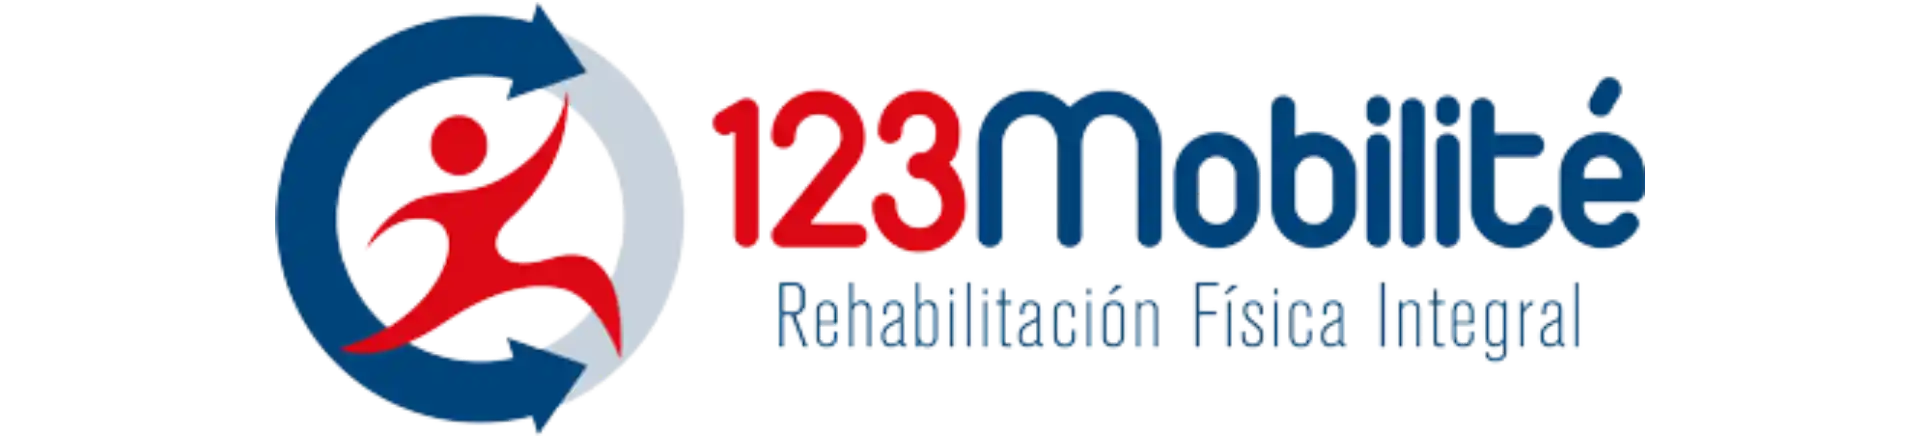 123-mobilite-logo-1